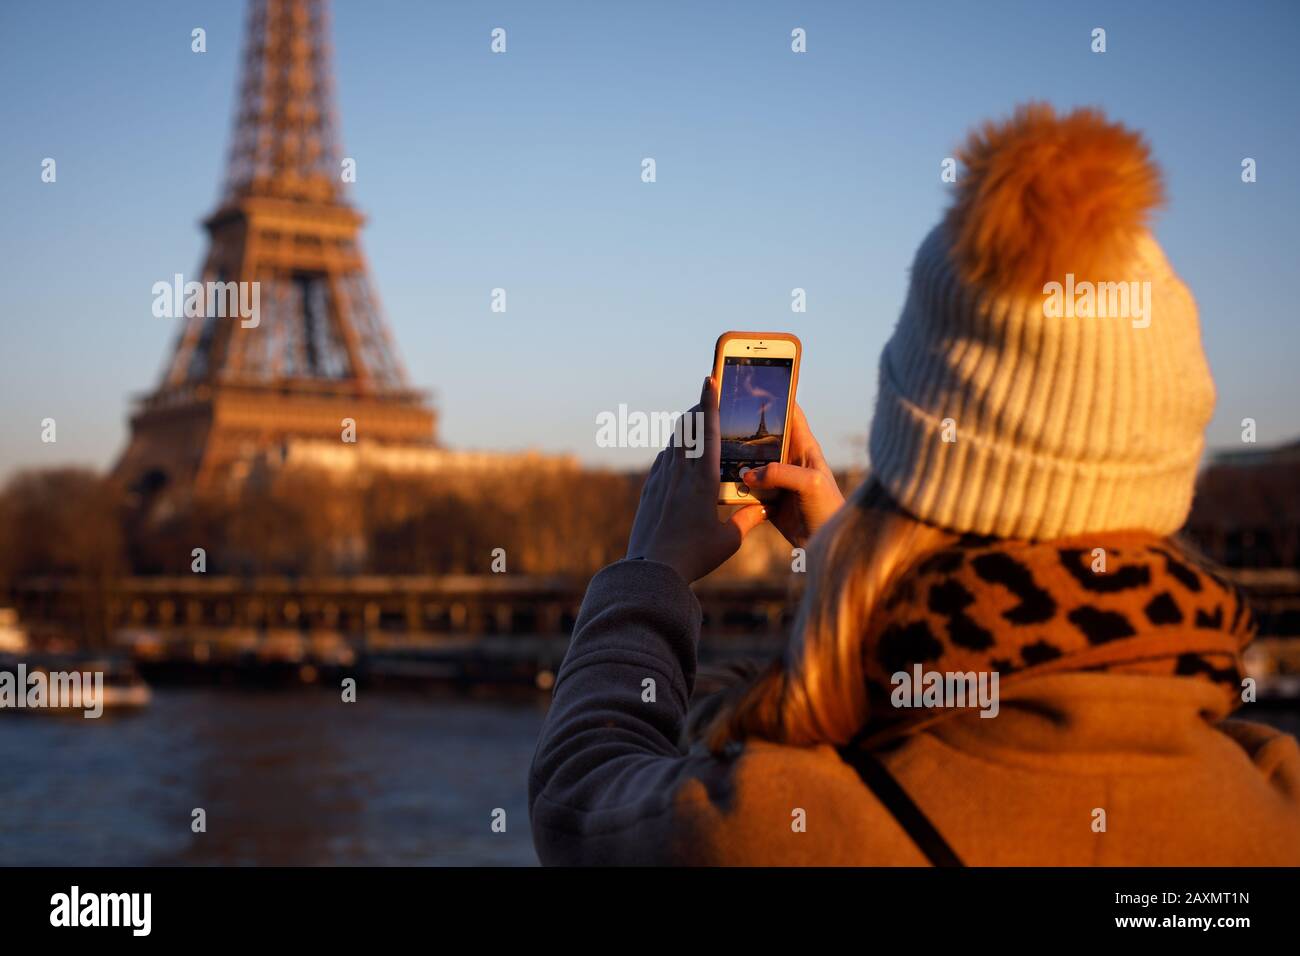 Un adulto joven toma una foto de la Torre Eiffel en París. Foto de stock